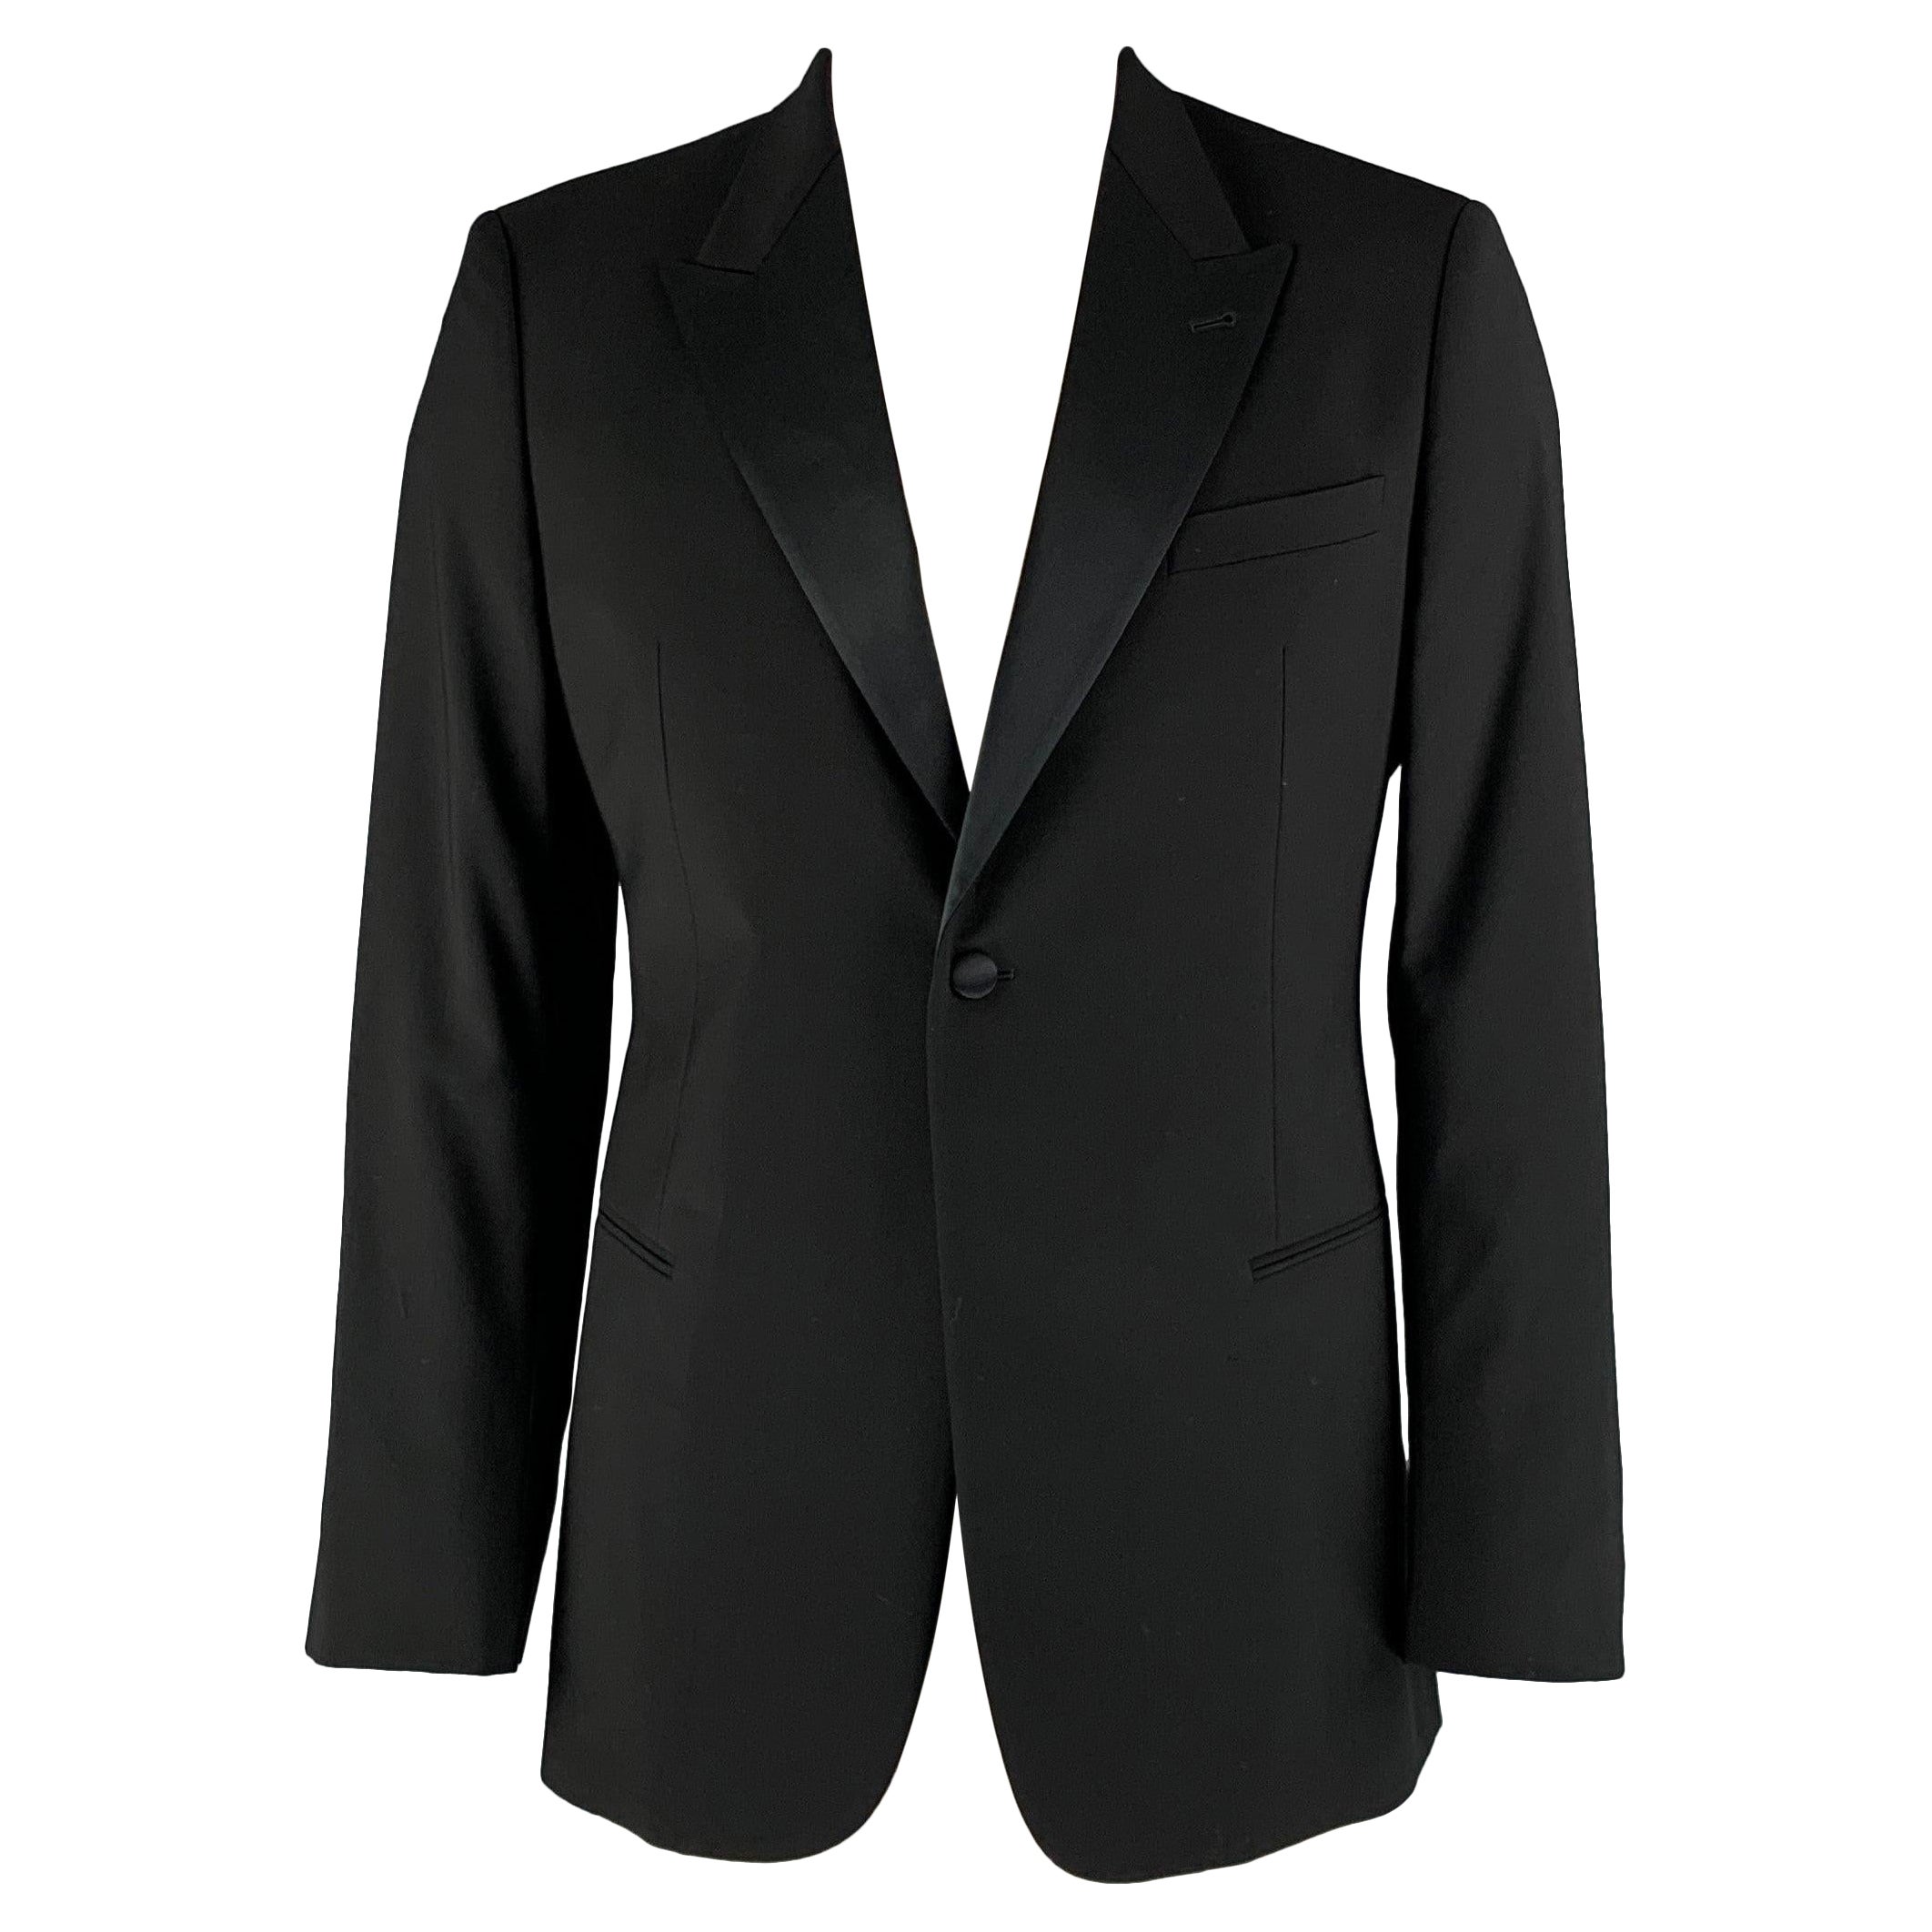 GIORGIO ARMANI Chest Size 42 Black Solid Wool Tuxedo Sport Coat For Sale